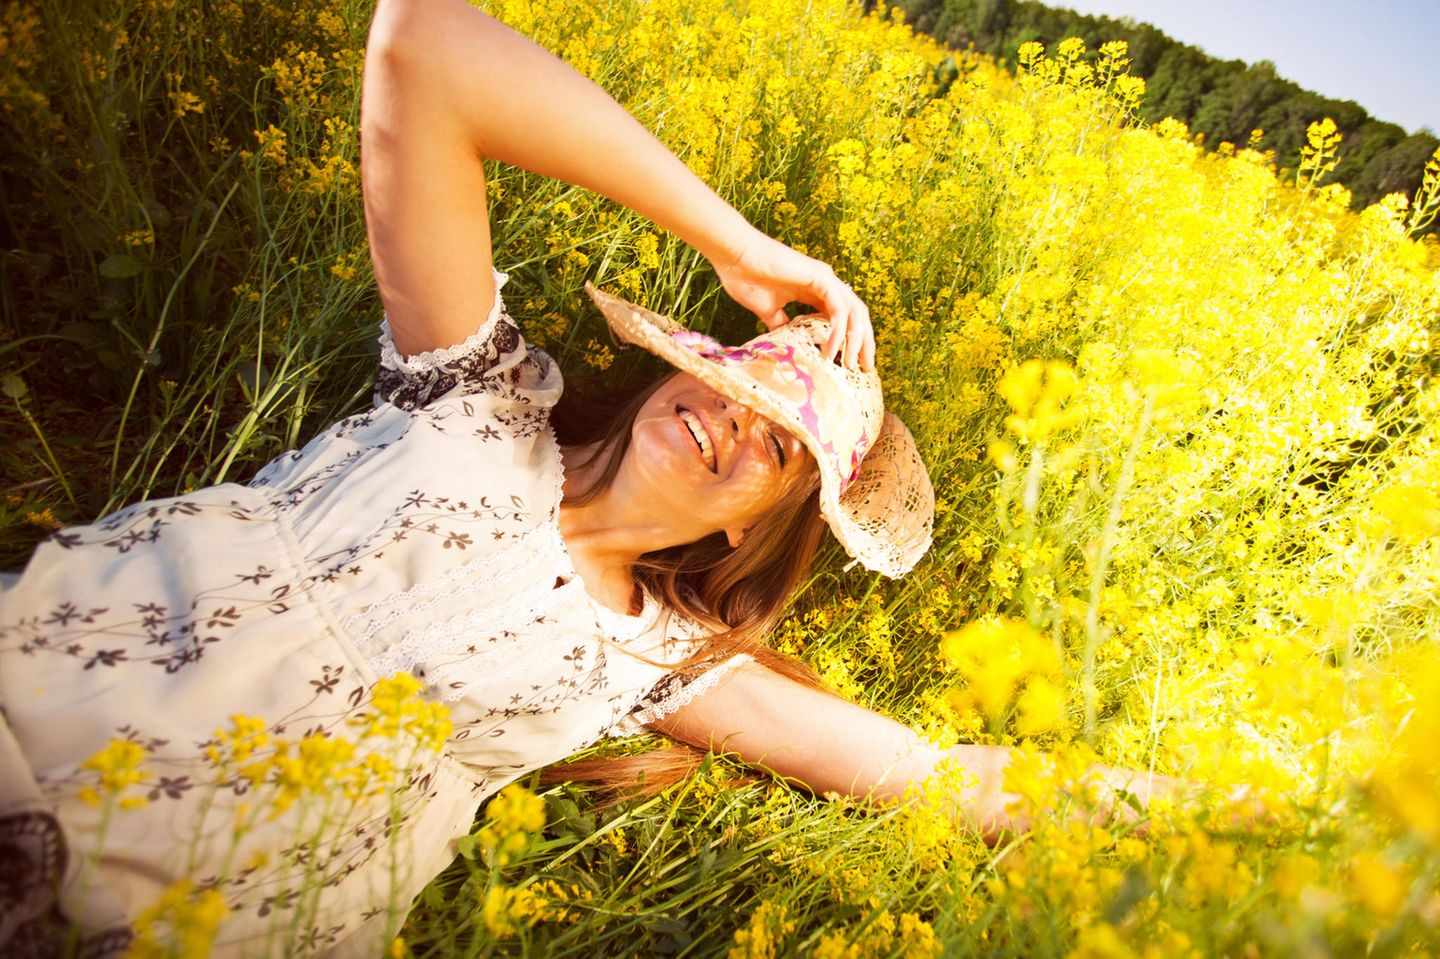 Erdzeichen: Eine Frau mit Hut liegt auf einer gelben Blumenwiese